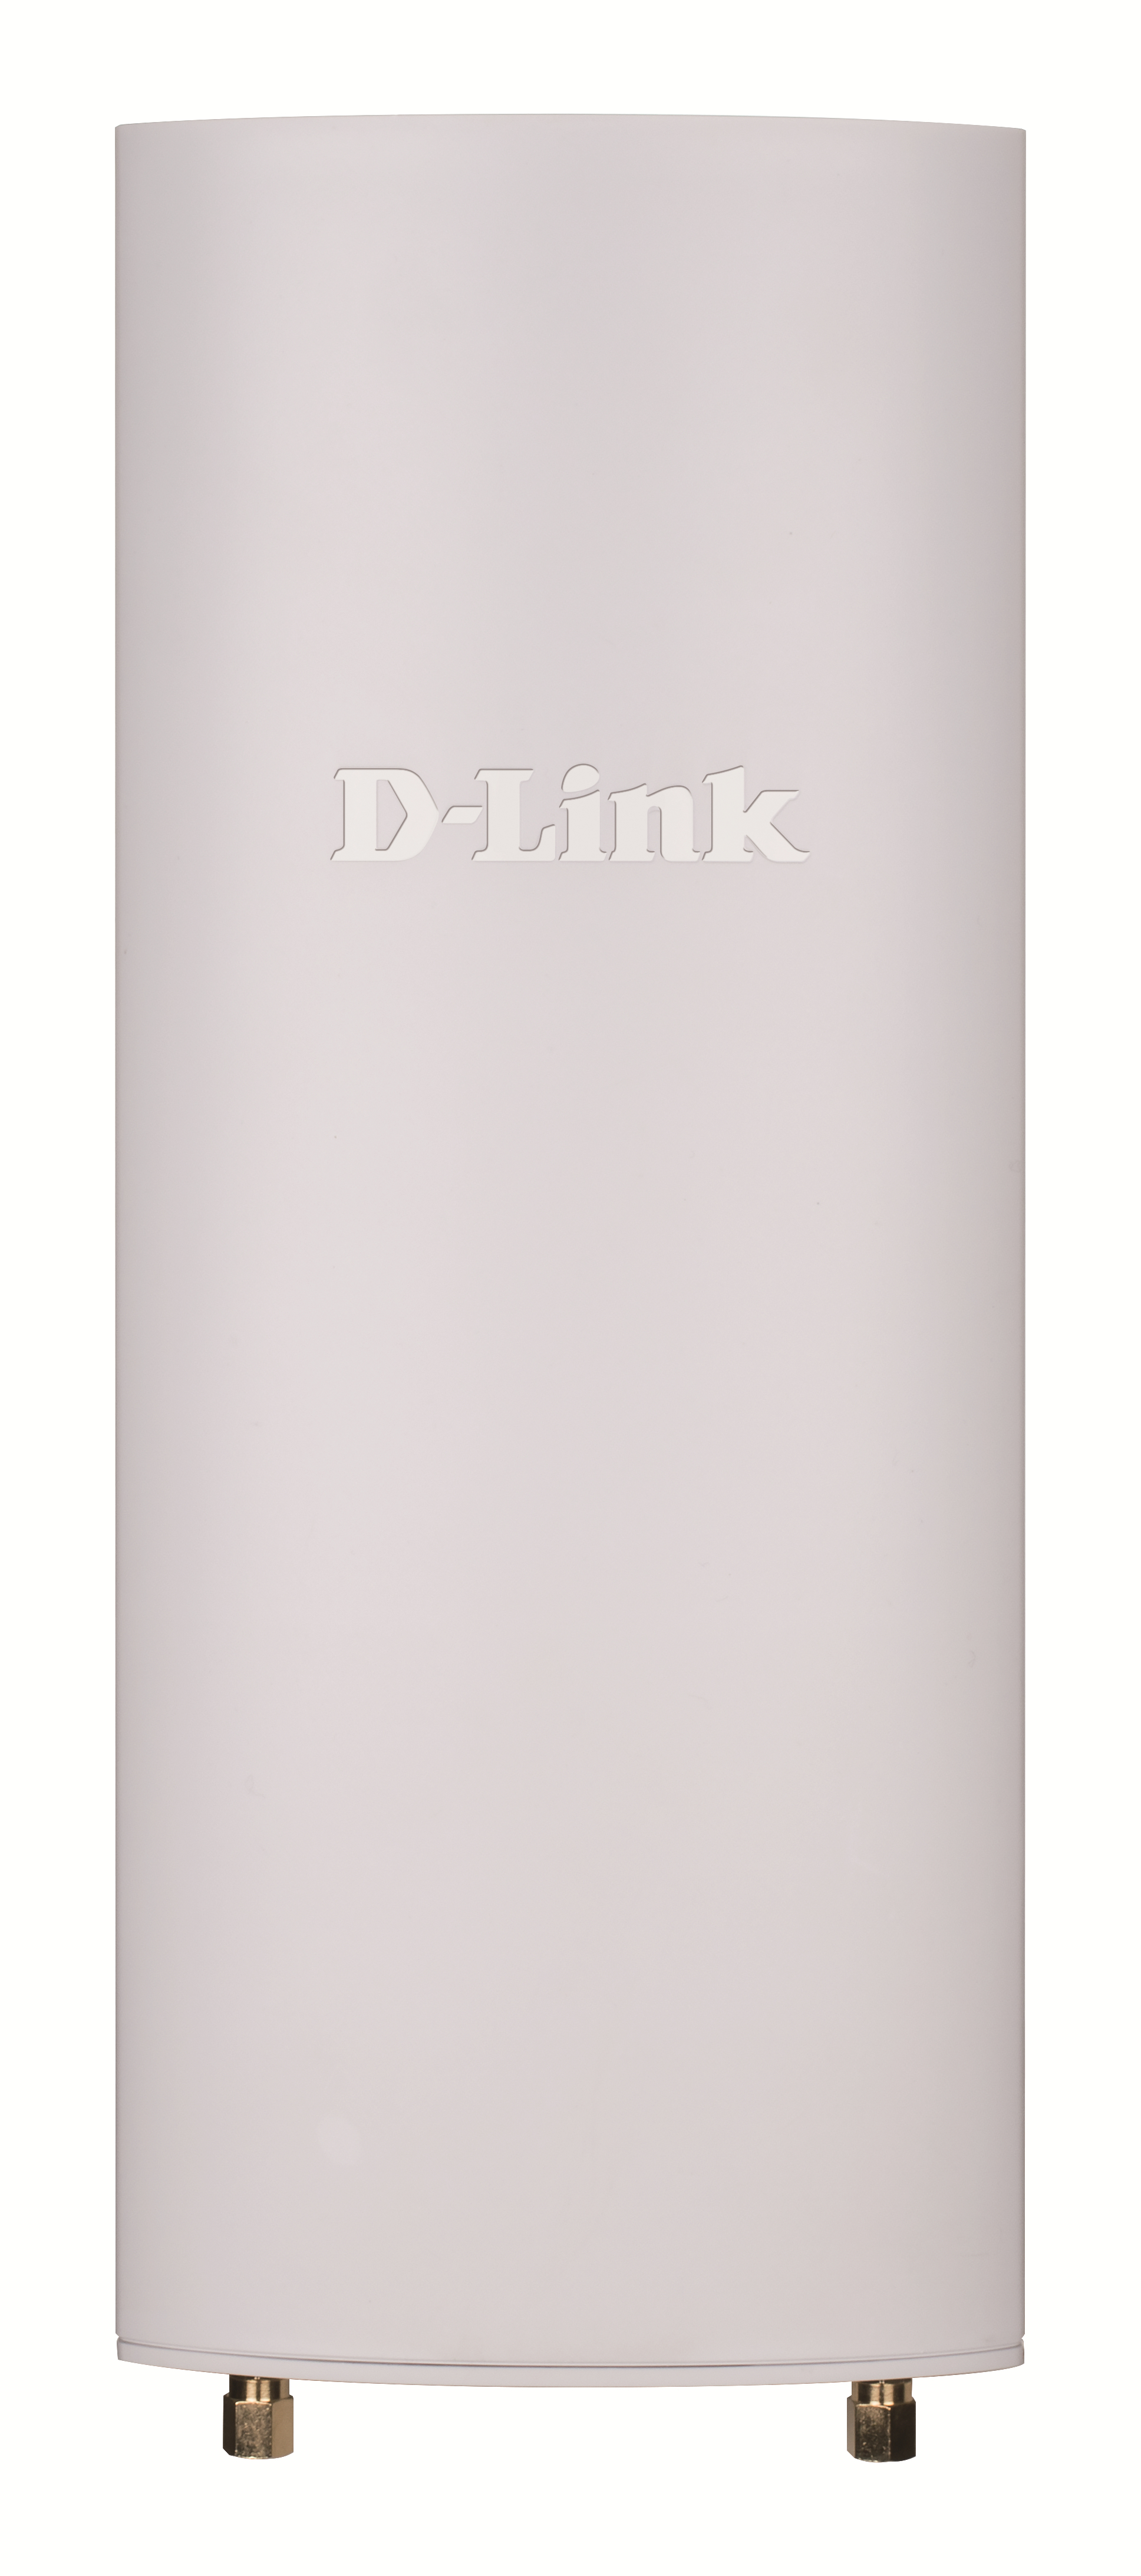 D-Link Nuclias DBA-3620P - Accesspoint - Wi-Fi 5